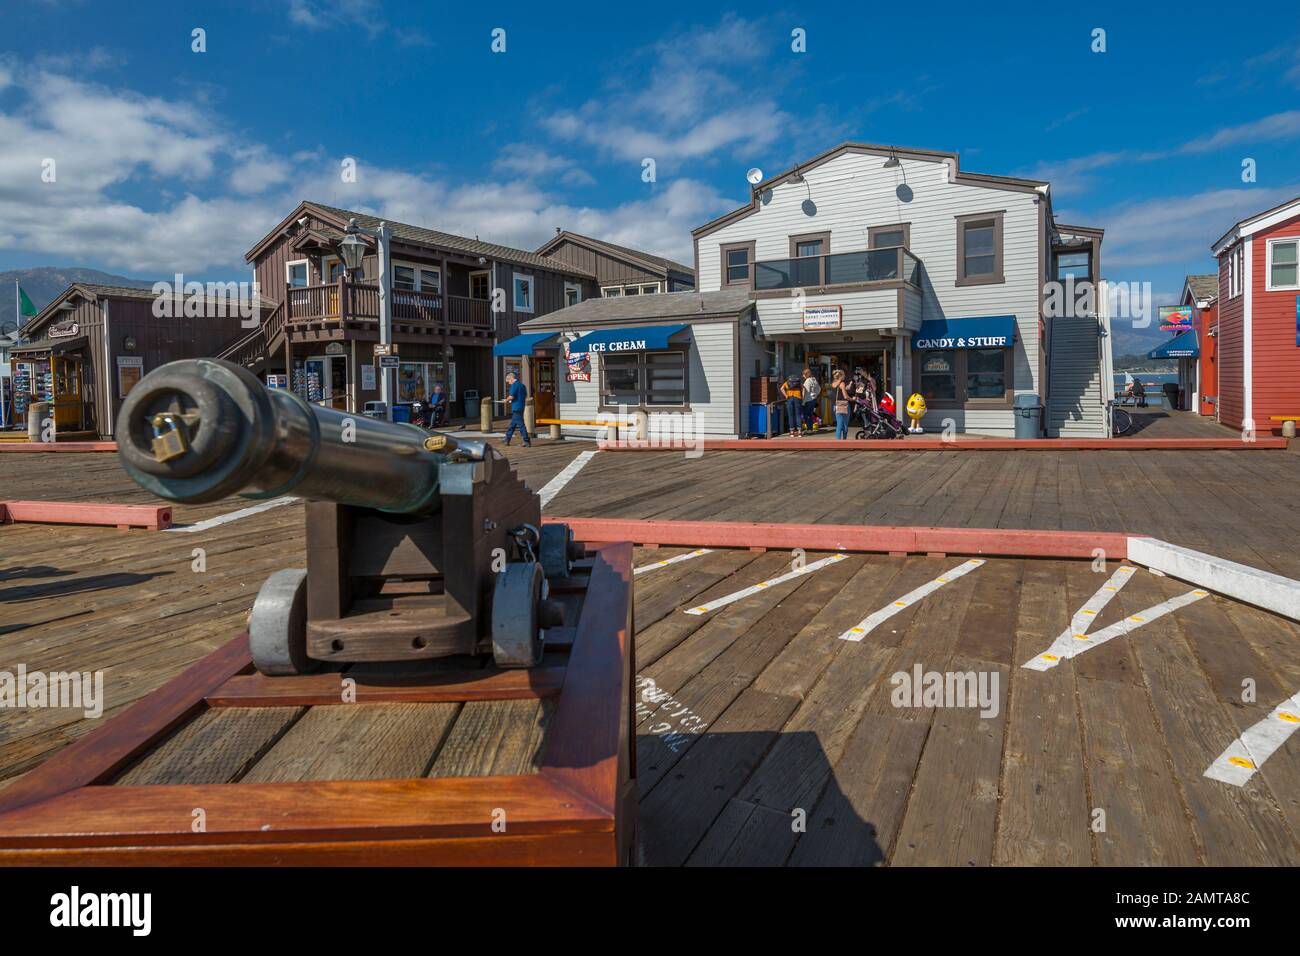 Ansicht der Pistole und Shops auf der Stearns Wharf, Santa Barbara, Santa Barbara County, Kalifornien, Vereinigte Staaten von Amerika, Nordamerika Stockfoto